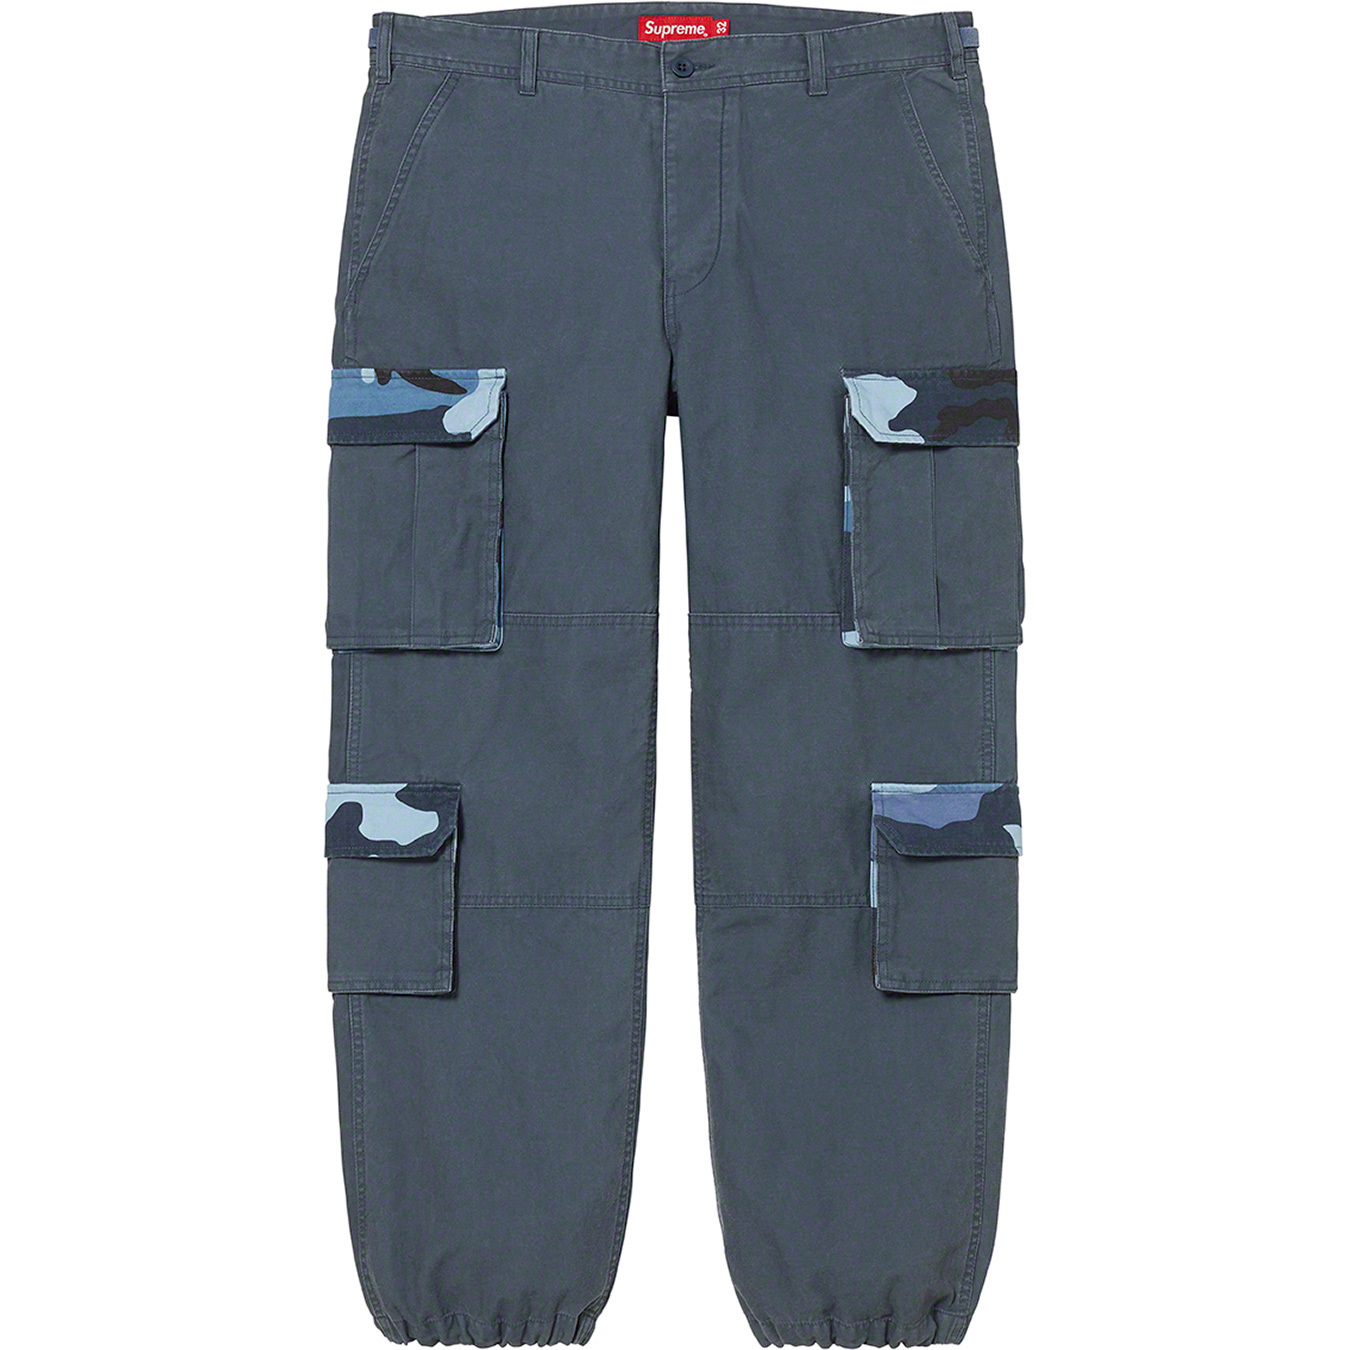 Pale Blue Cargo Pants